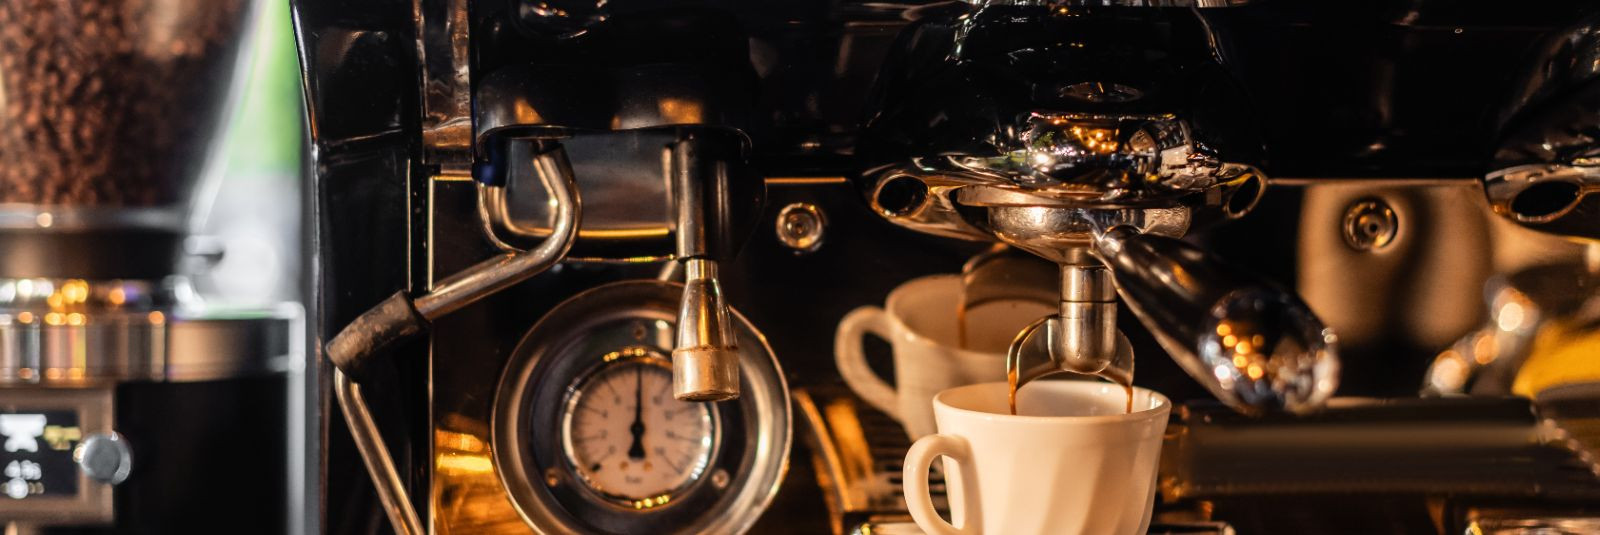 Kohvimasina regulaarne hooldus on oluline, et tagada masina töökindlus ...